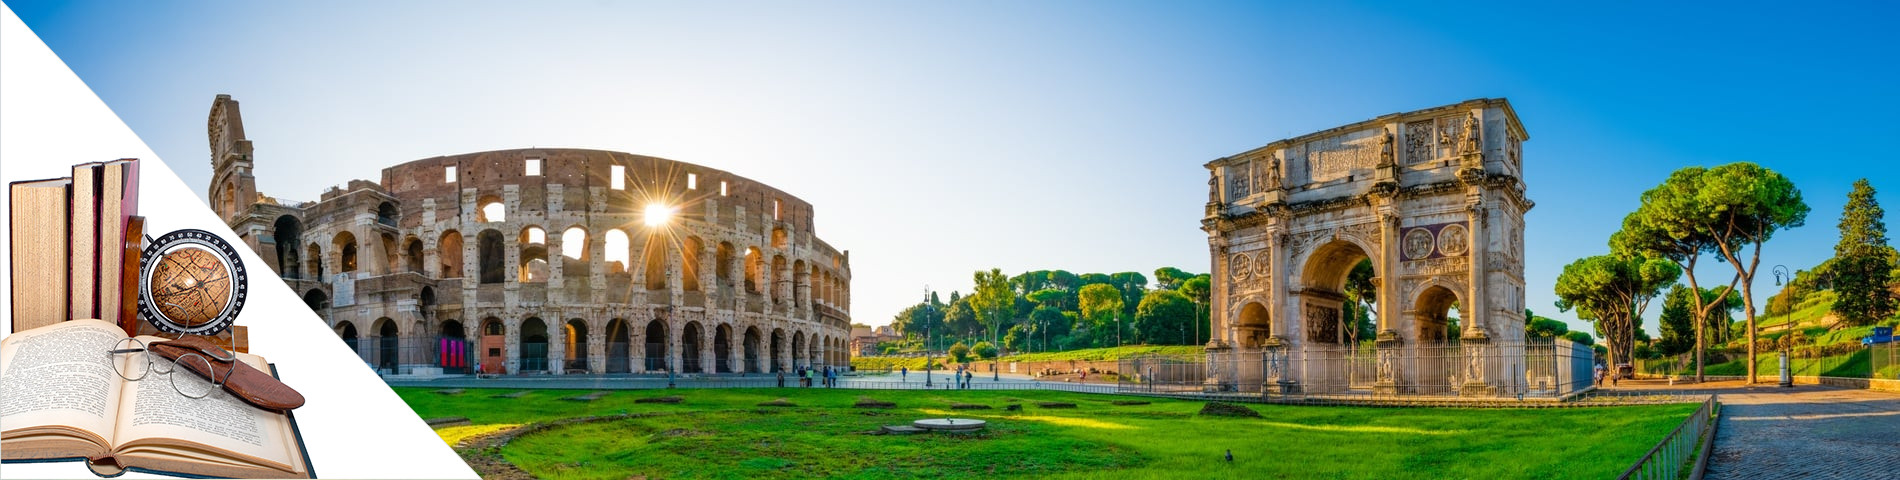 Rooma - Italia & taiteet & kirjallisuus